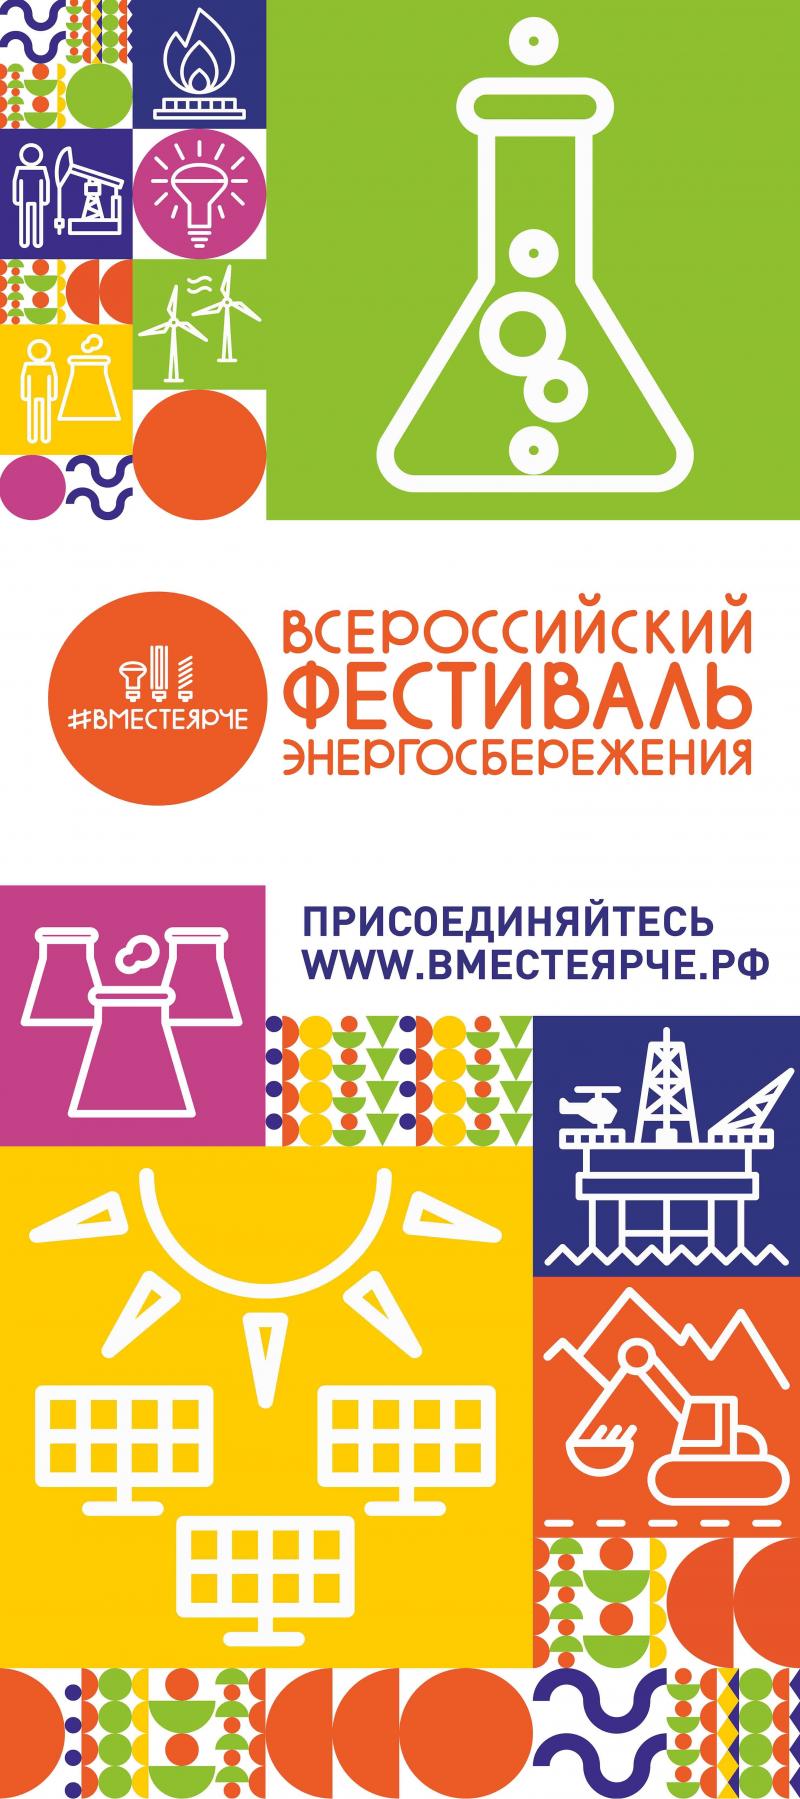 1 сентября 2019 года в городе Вологде состоится Всероссийский фестиваль энергосбережения «Вместе Ярче»